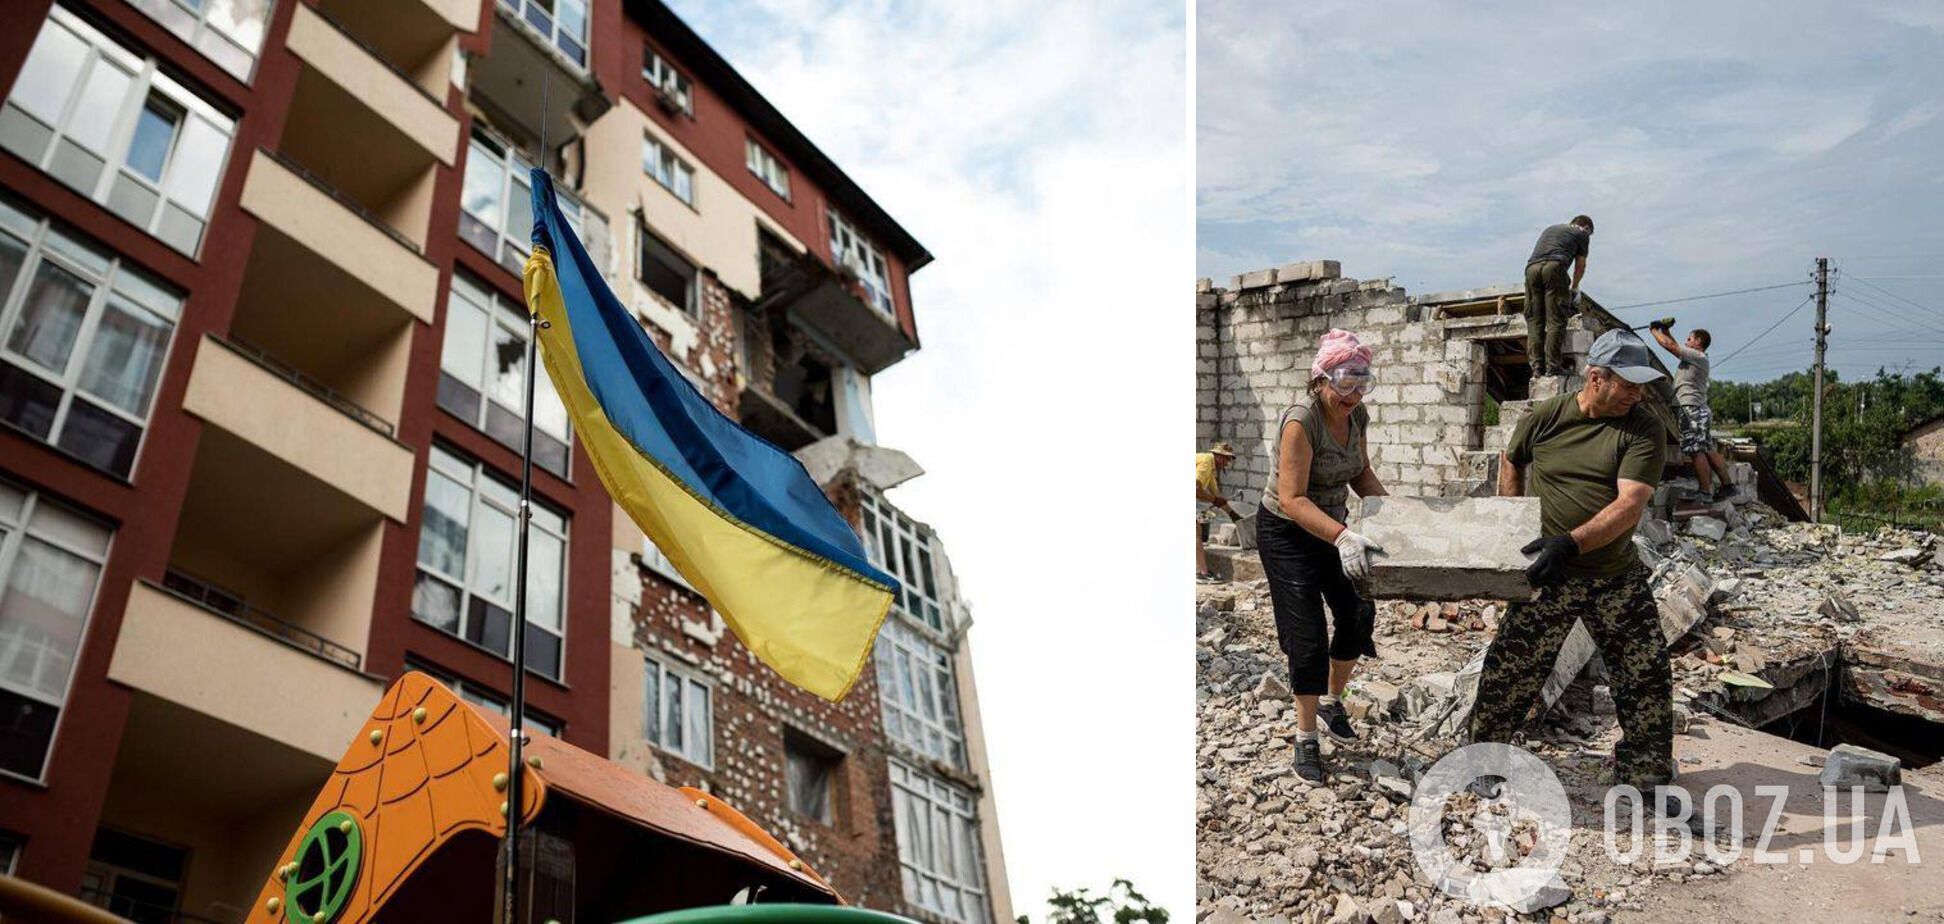 "Мир сошел с ума": экстрасенс озвучил прогноз по срокам завершения войны в Украине и ситуации в других странах